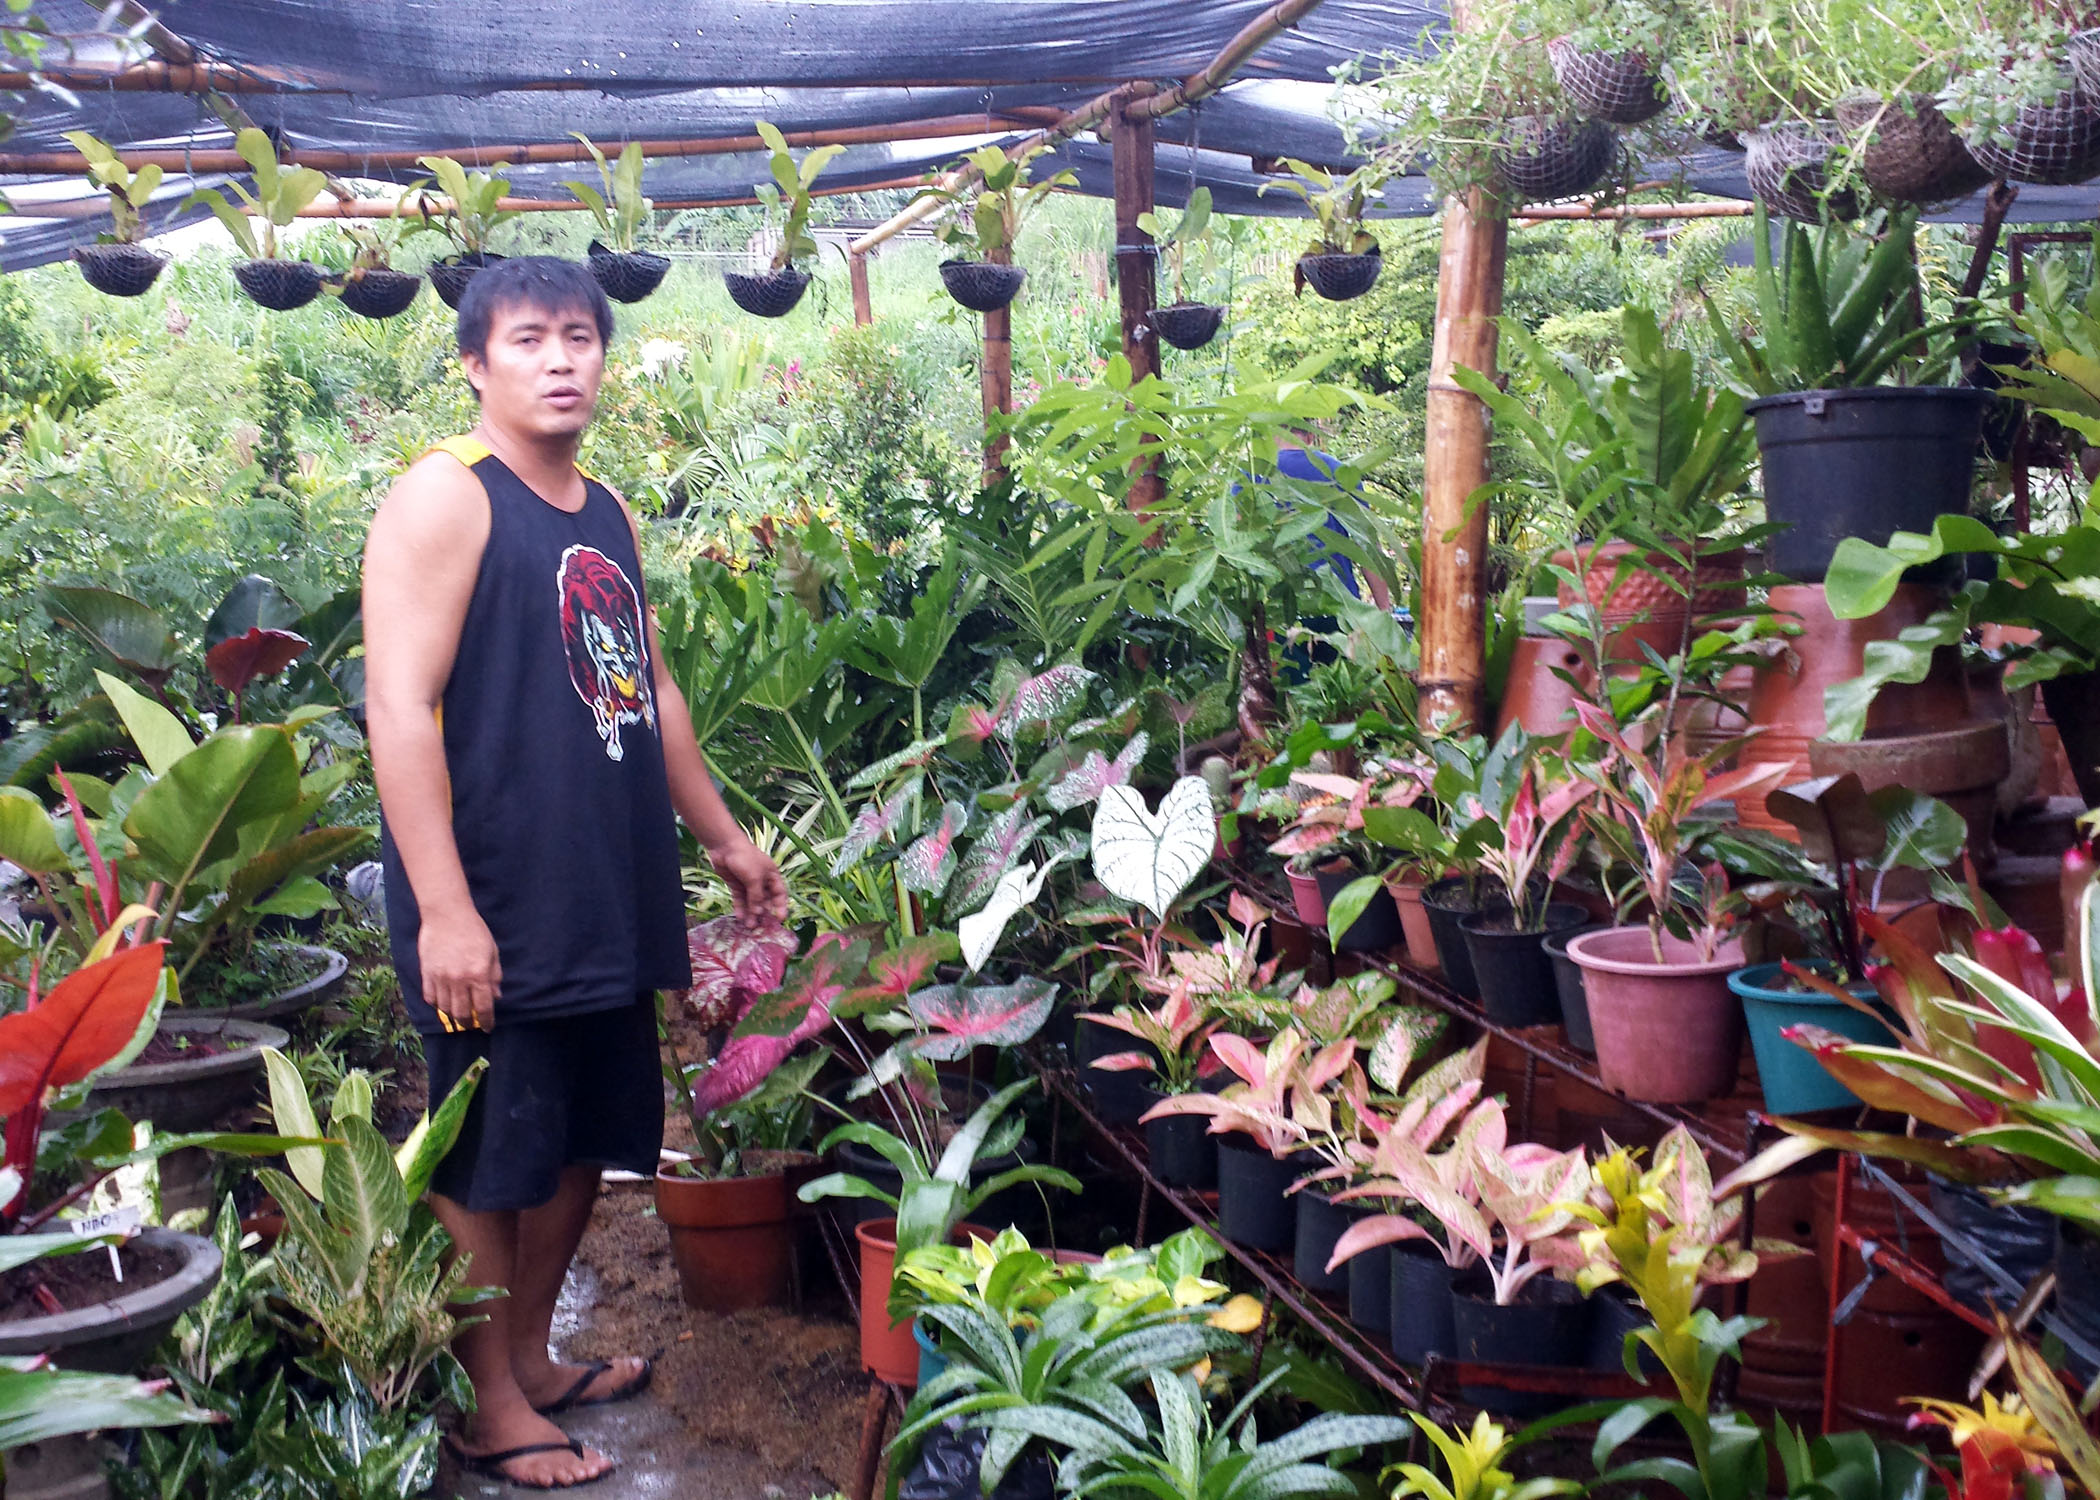 Wilredo Valencia, Jr. with his garden of plants in San Jose Del Monte, Bulacan